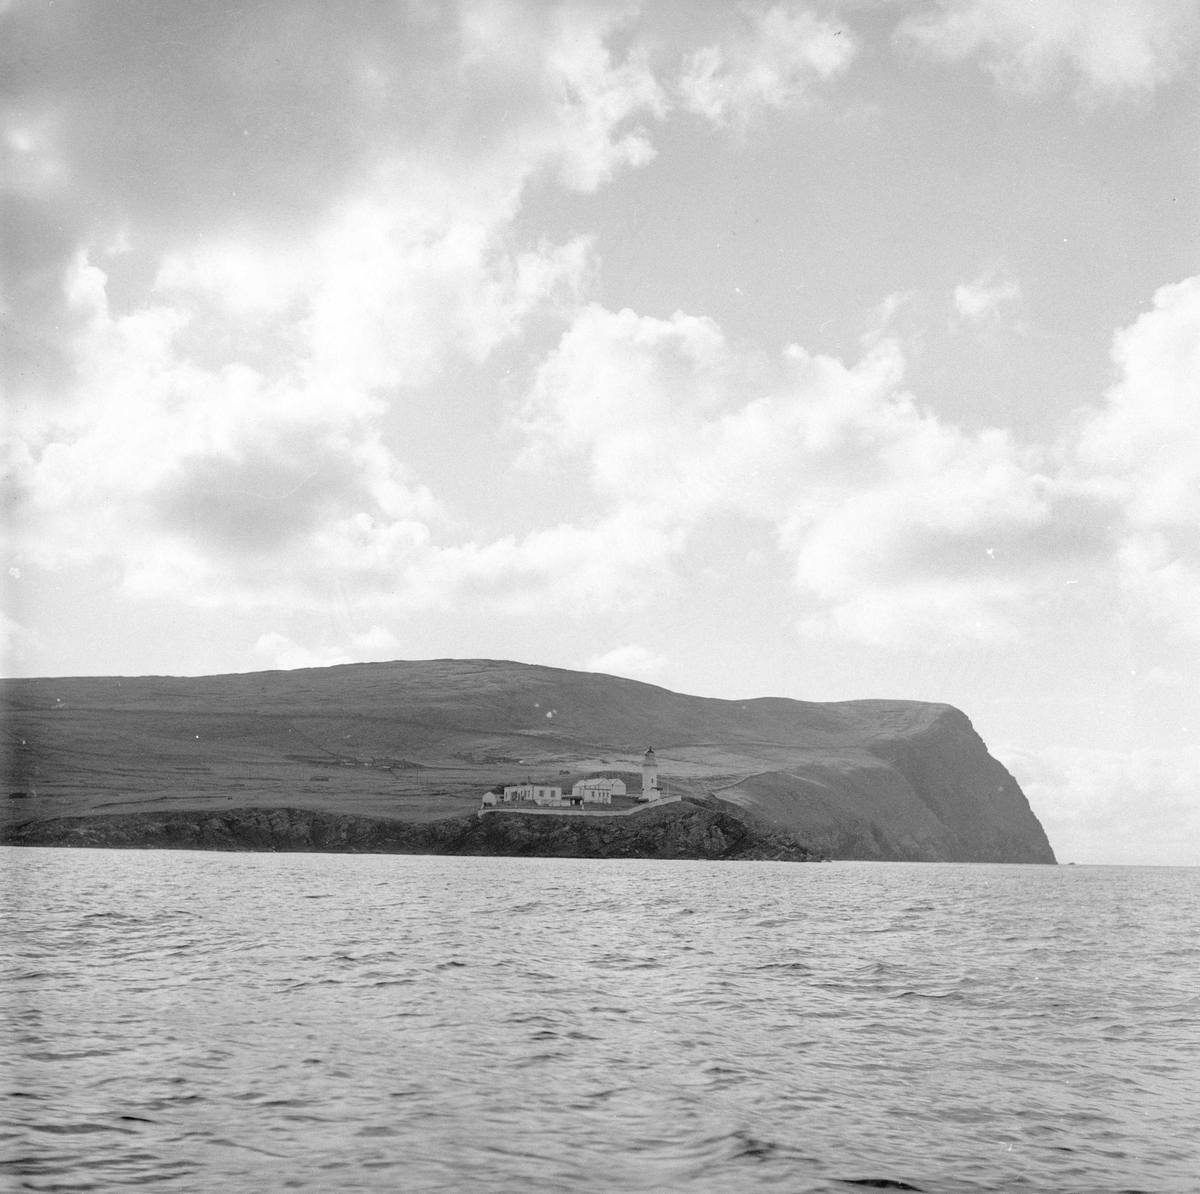 Pigghåfiske på Shetland.
Shetland, 14-22. mai 1958, landskap sett fra sjøen.